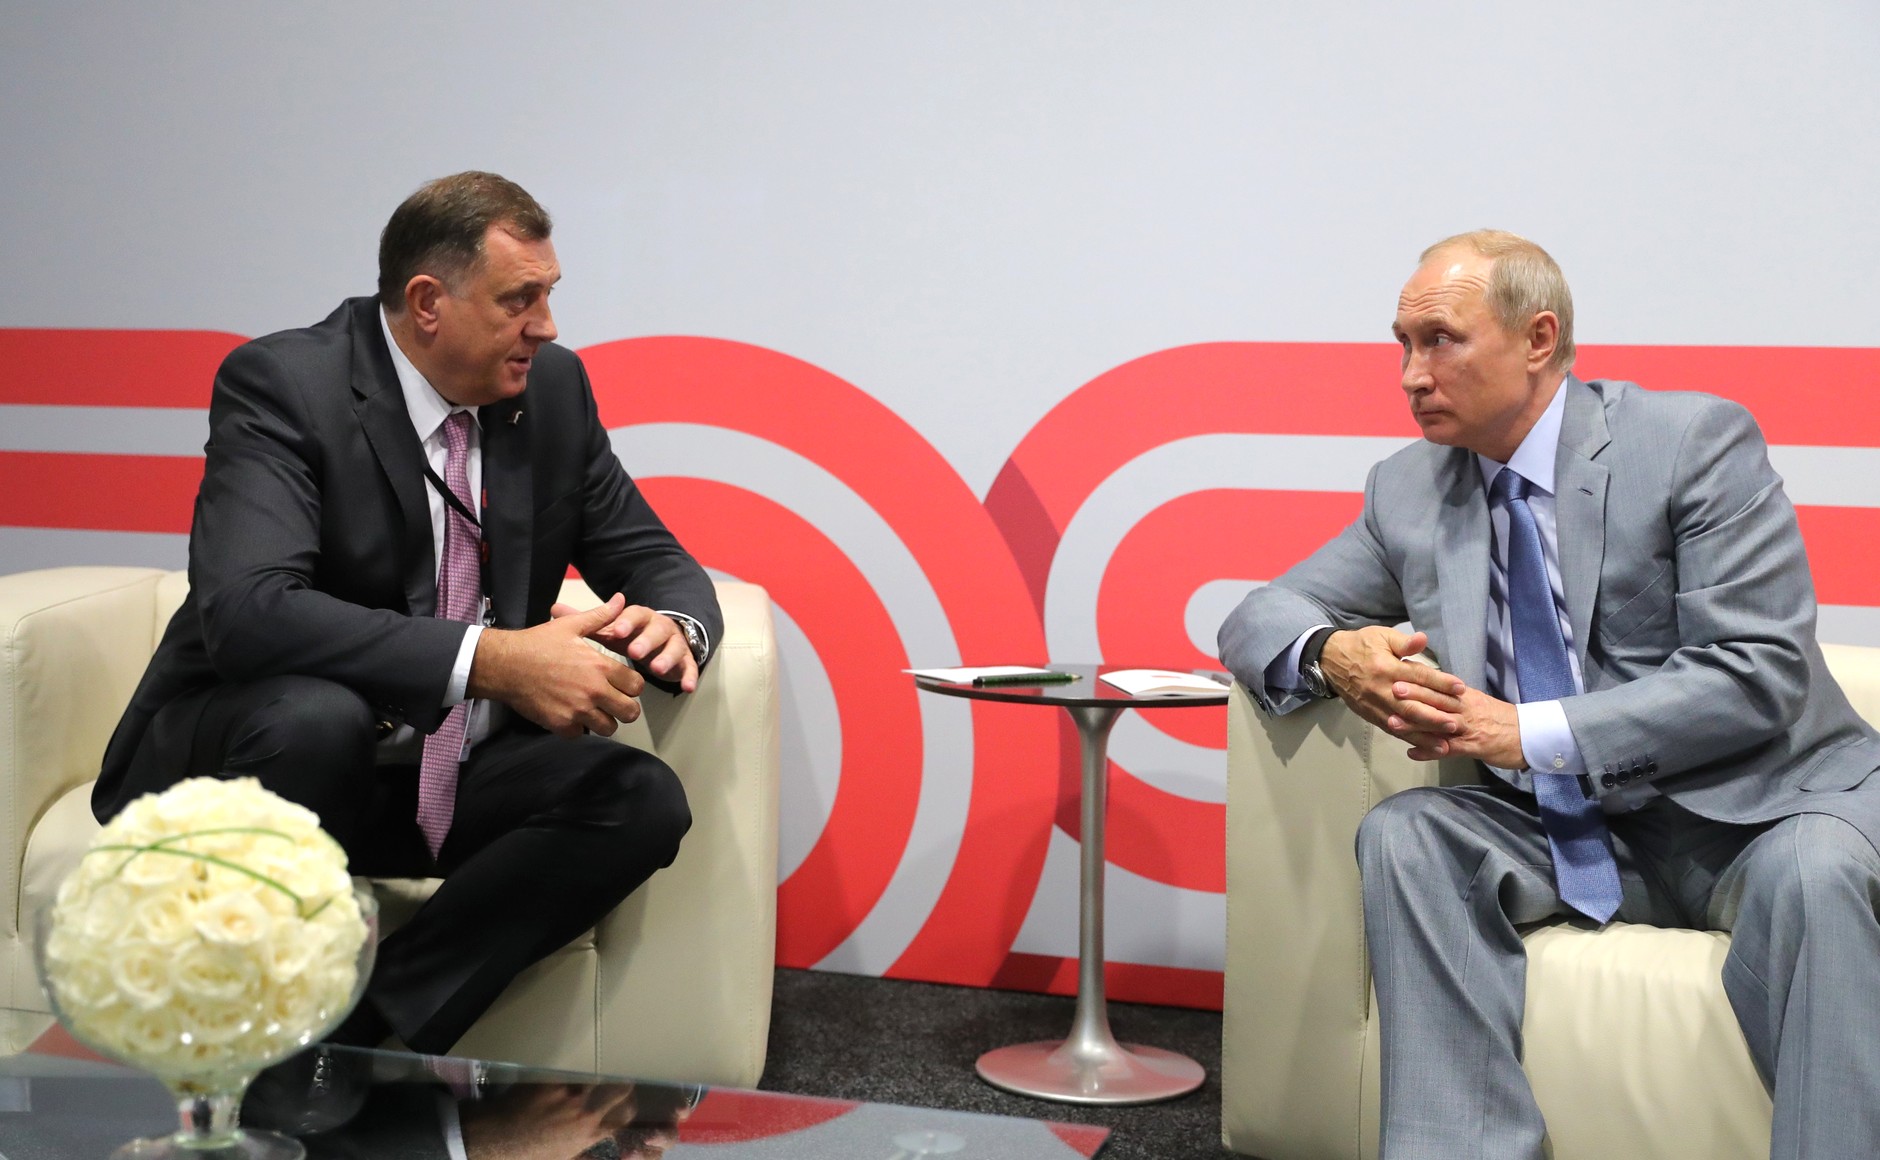 Milorad Dodik og Vladimir Putin sitter sammen og snakker foran et bord med blomster.